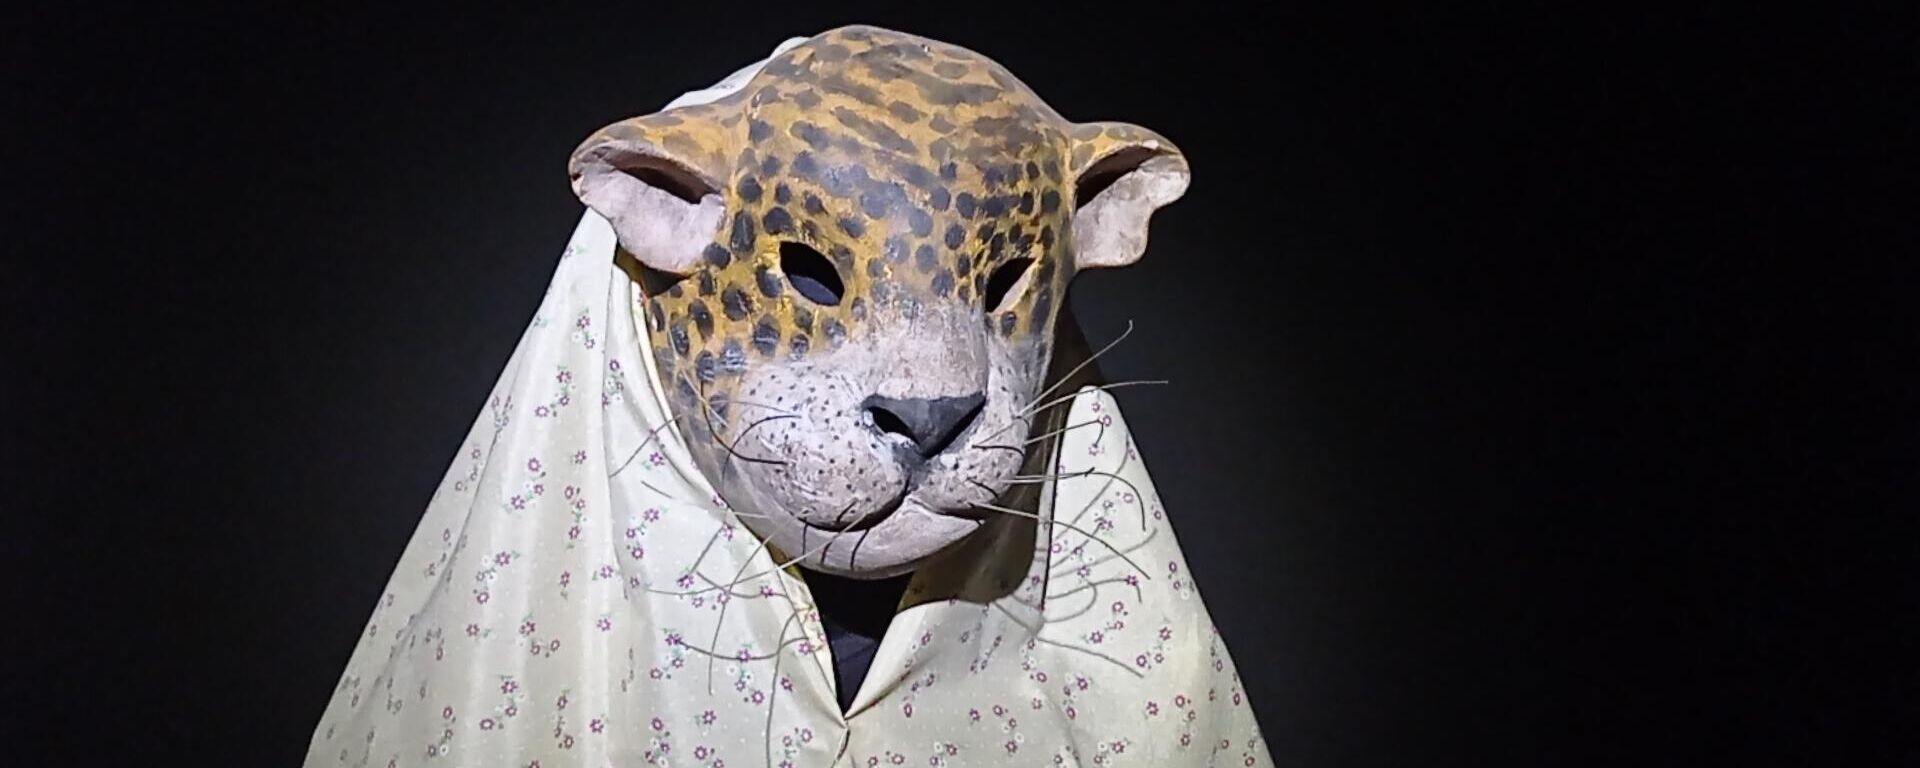 Una máscara de jaguar - Sputnik Mundo, 1920, 29.04.2021